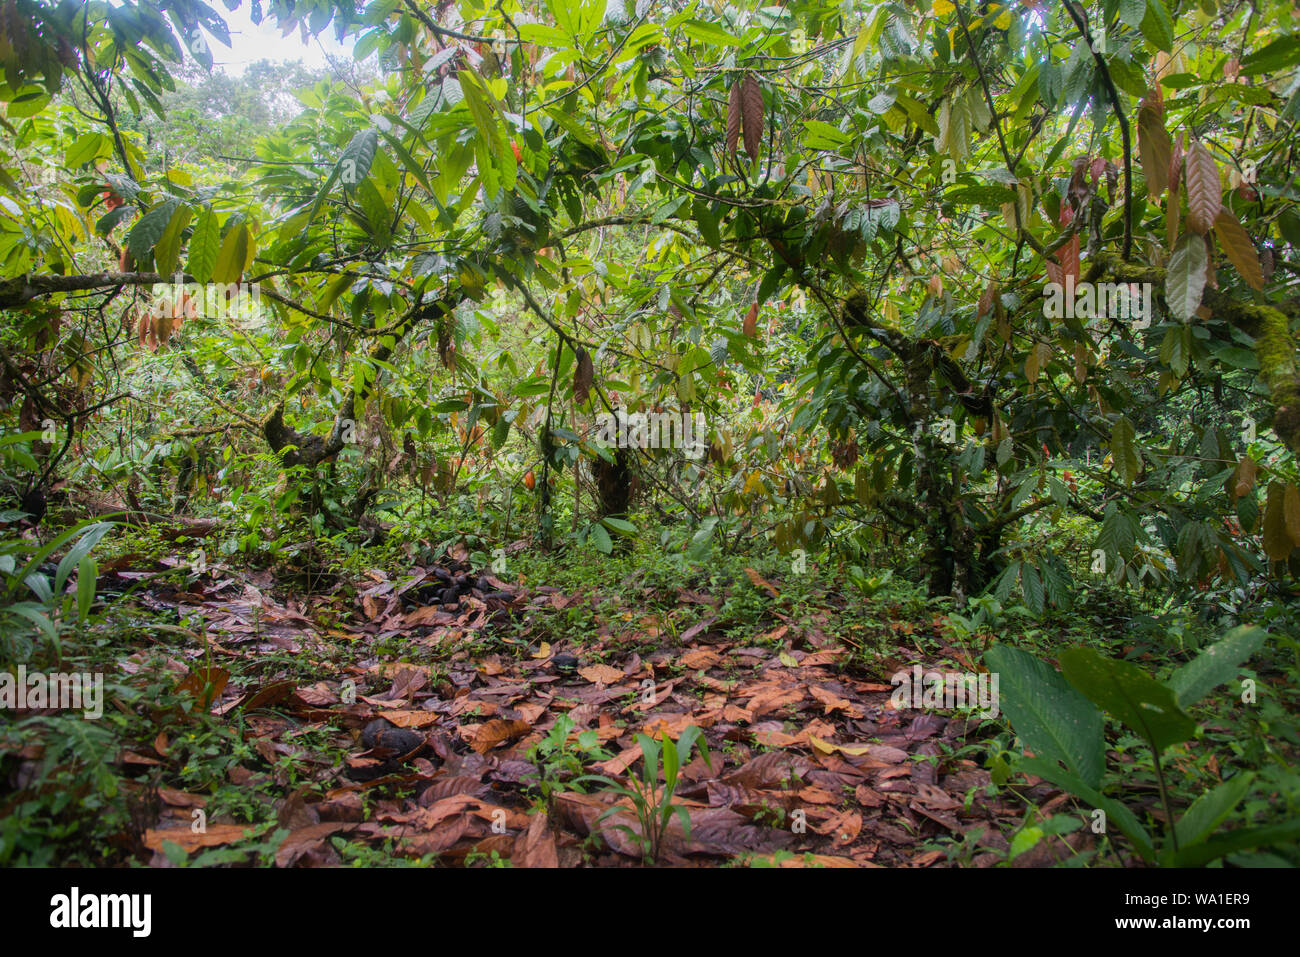 Plantation de cacao biologique en pleine croissance dans la forêt tropicale brésilienne. Banque D'Images